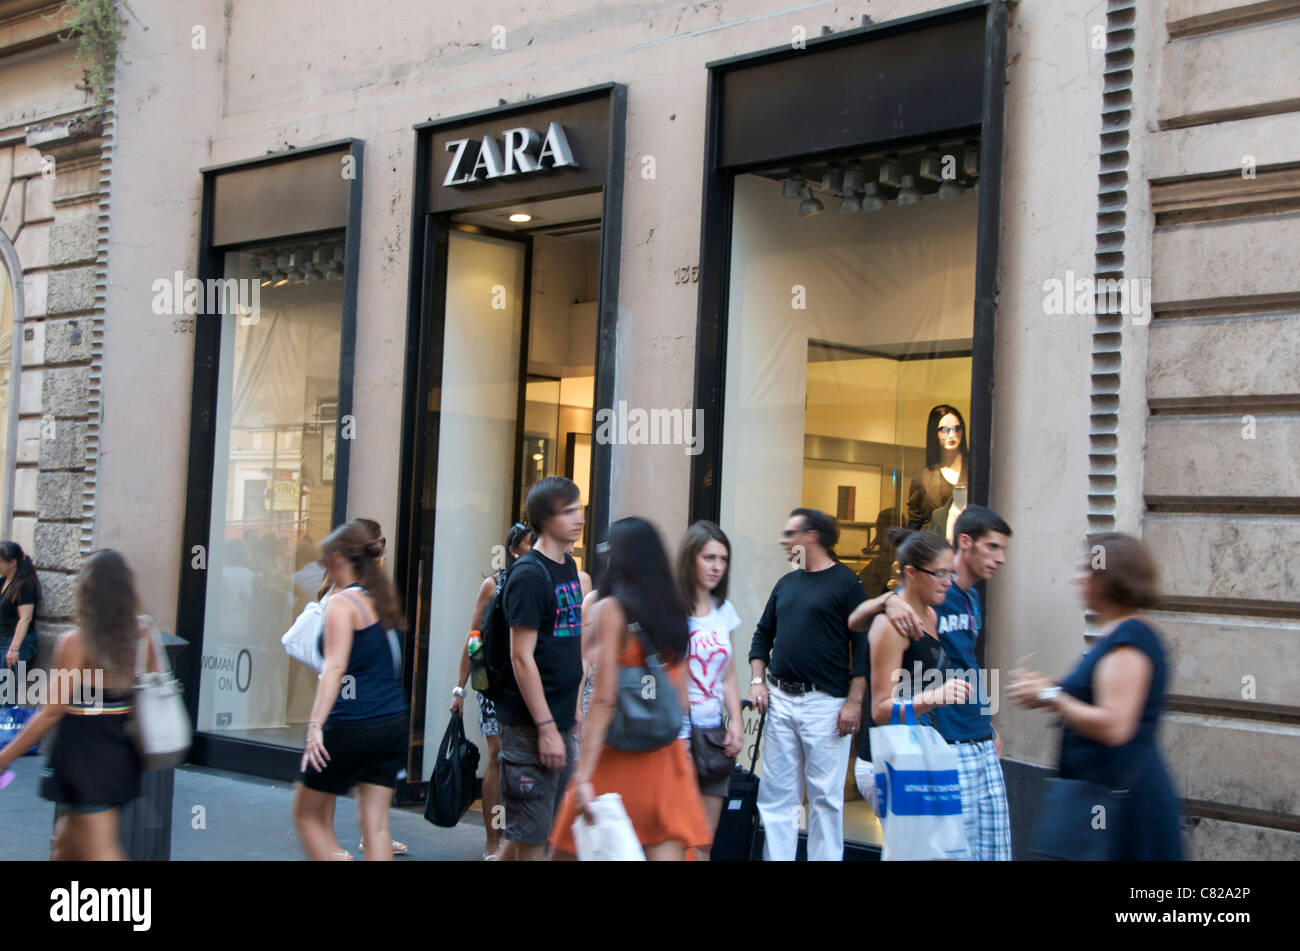 Zara store, Rome, Italy Stock Photo - Alamy